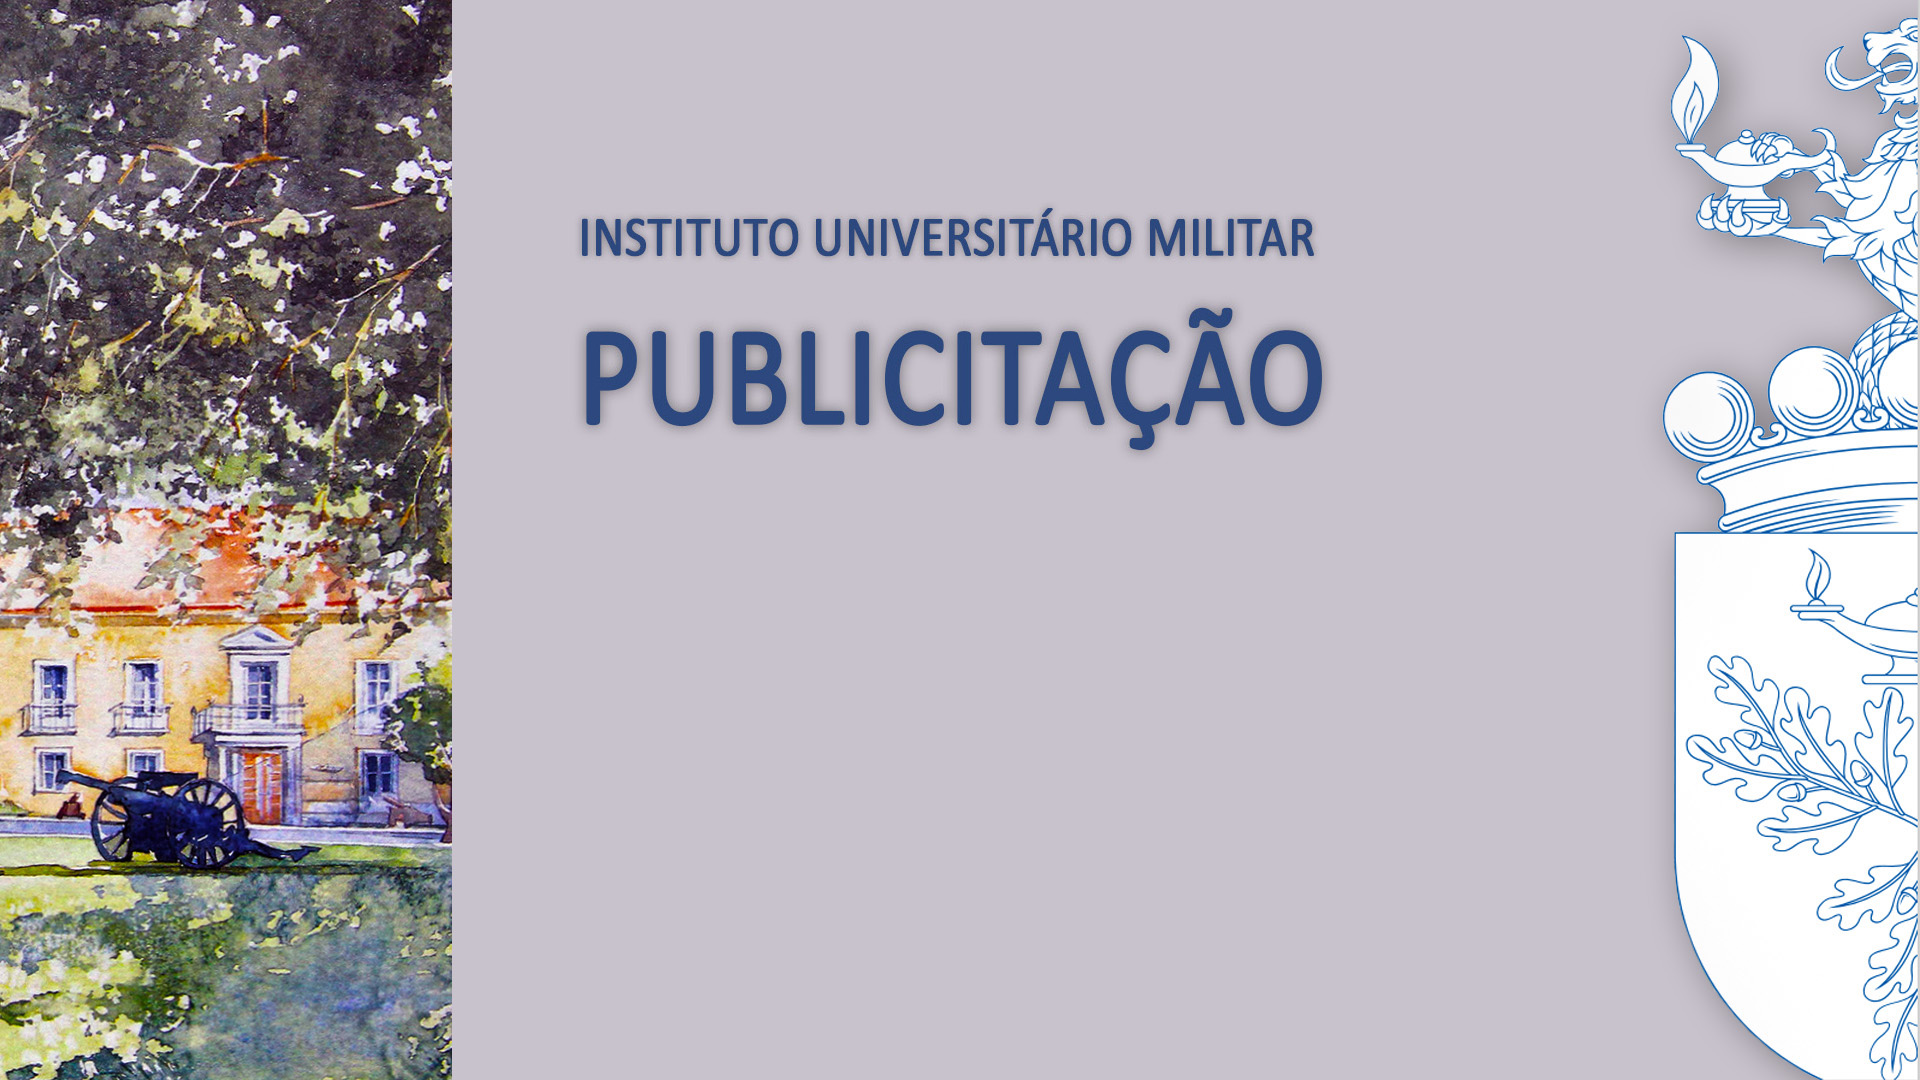 Publicitação do Início do Procedimento Tendente à Criação do Regulamento de Avaliação do Desempenho dos Docentes do Instituto Universitário Militar